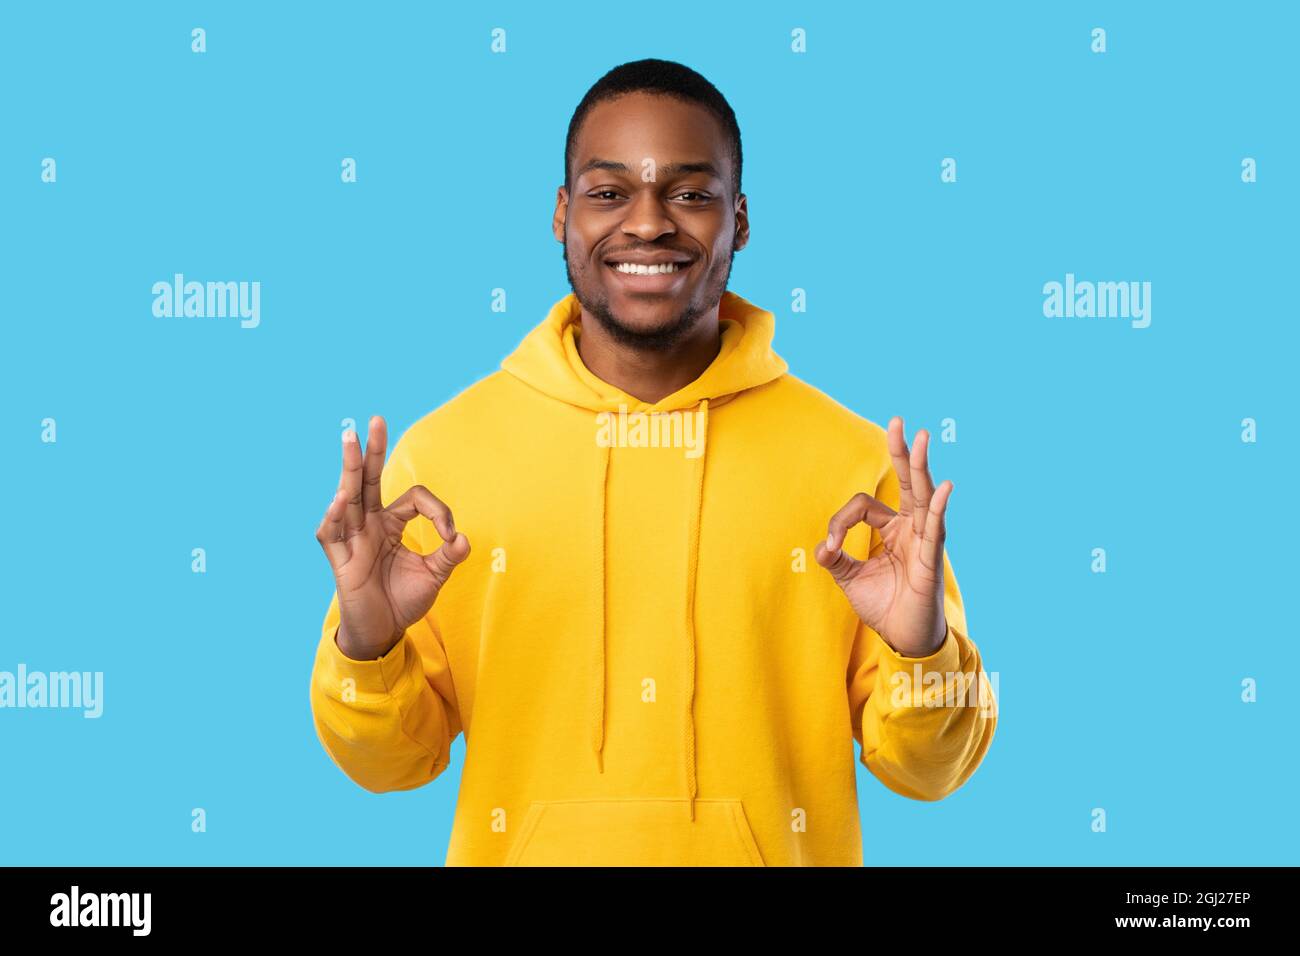 Tout est OK. Sourire Africain américain Guy gesturant OK signe avec les  deux mains regardant la caméra debout sur fond bleu, portant lumineux Yello  Photo Stock - Alamy